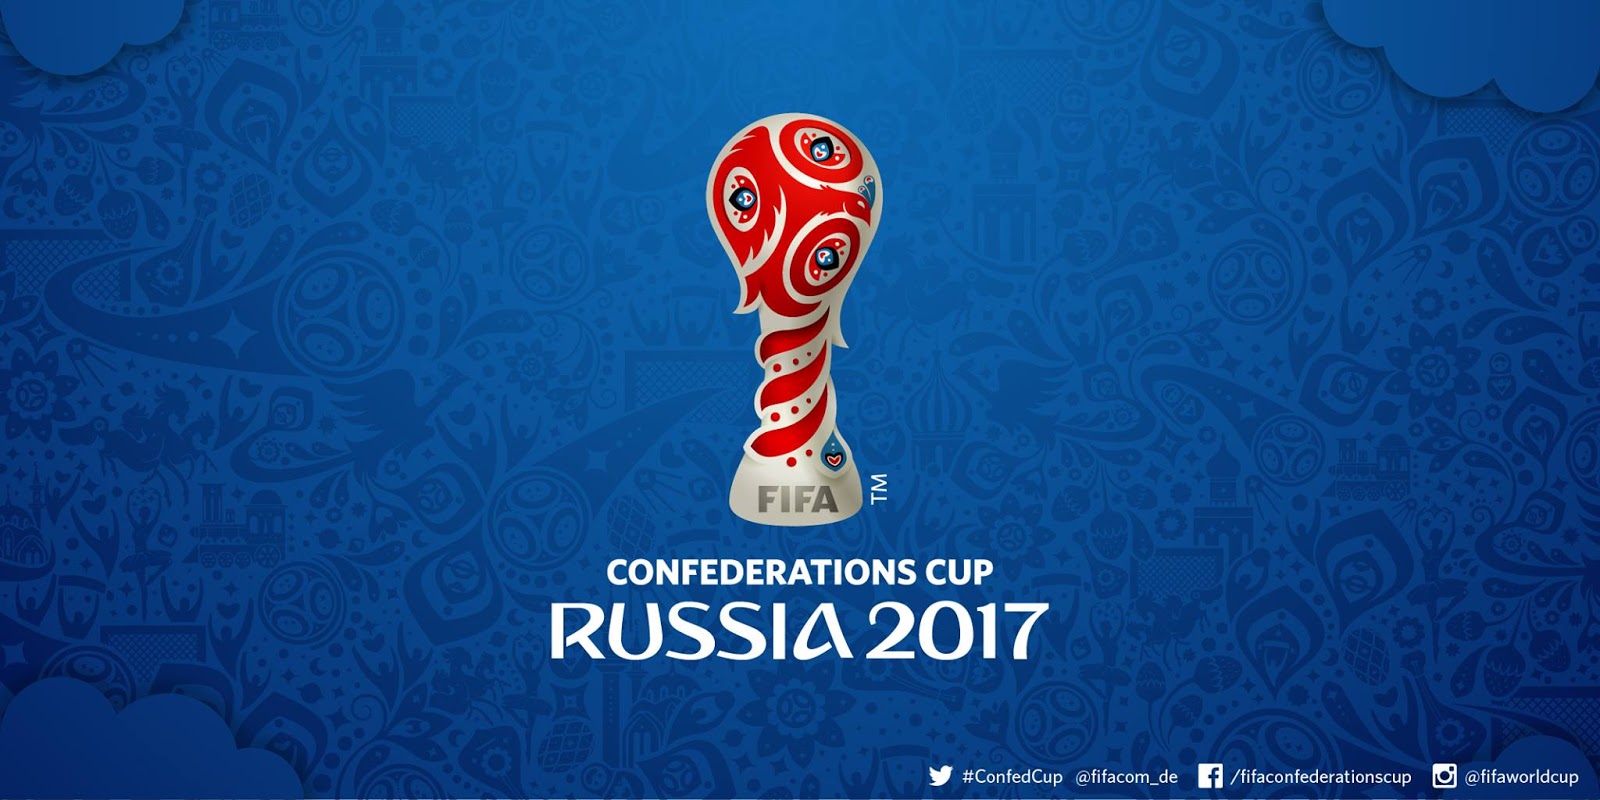 Confederation Cup